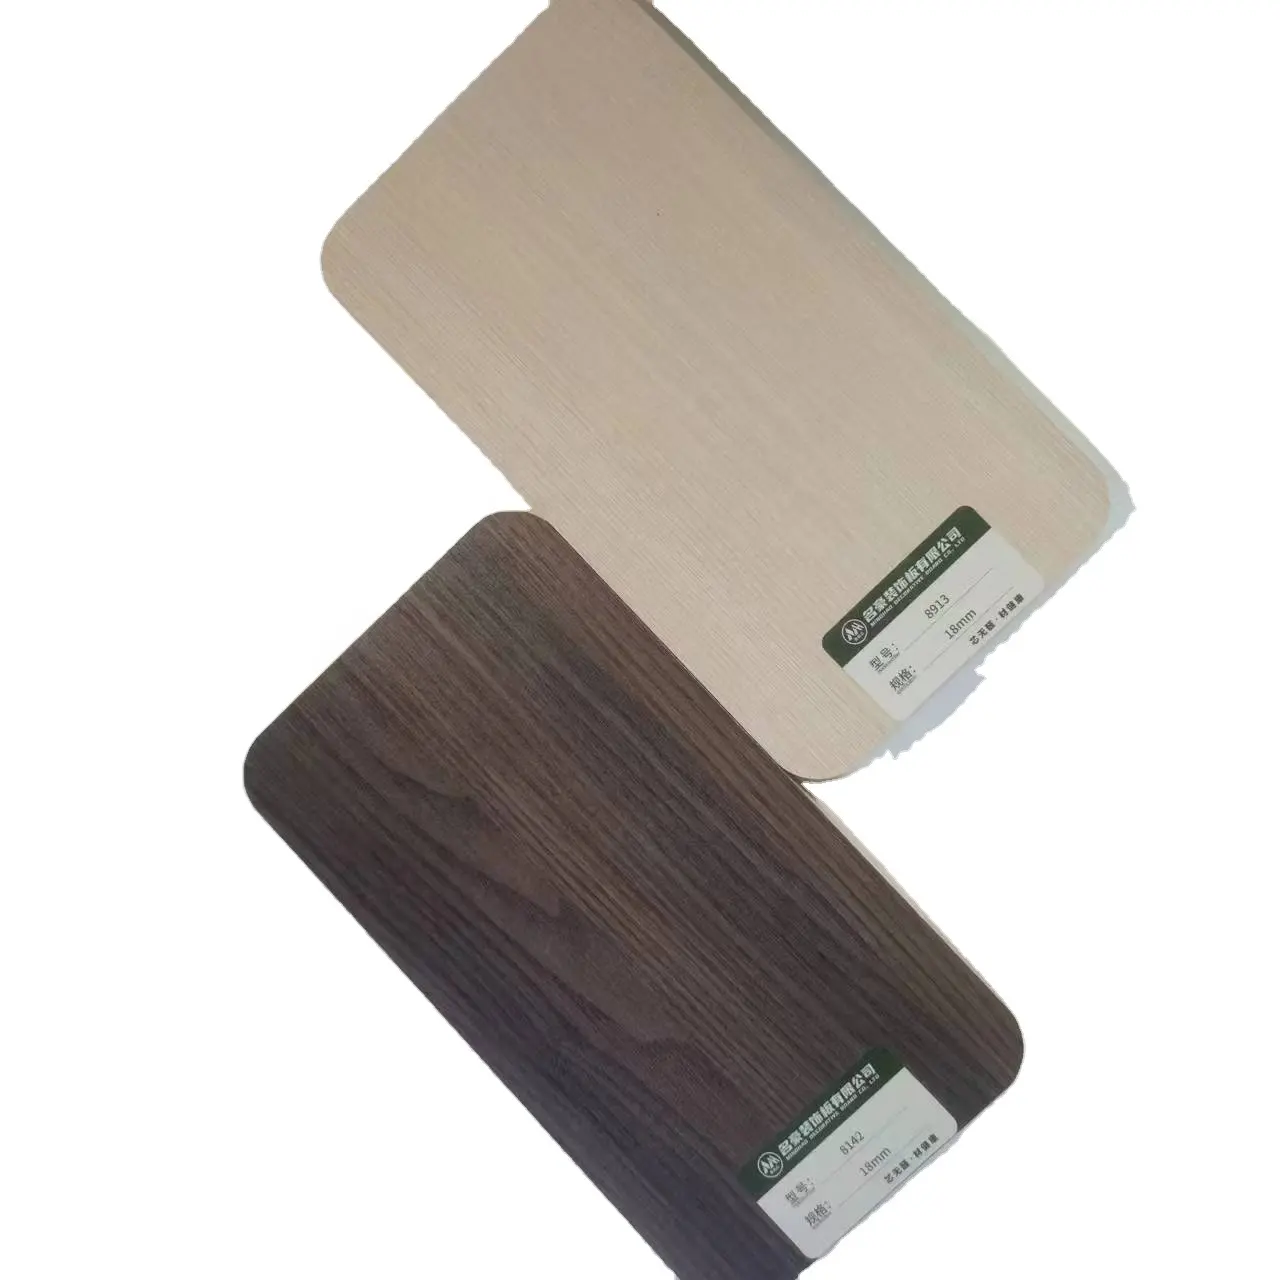 Individuelles 18 mm Gummi Holz Finger-Gemeinschaftsbrett mit Holzmaserung einfache Handhabung für Möbel Verwendung bemalte Oberfläche E0 und E1 Kleber